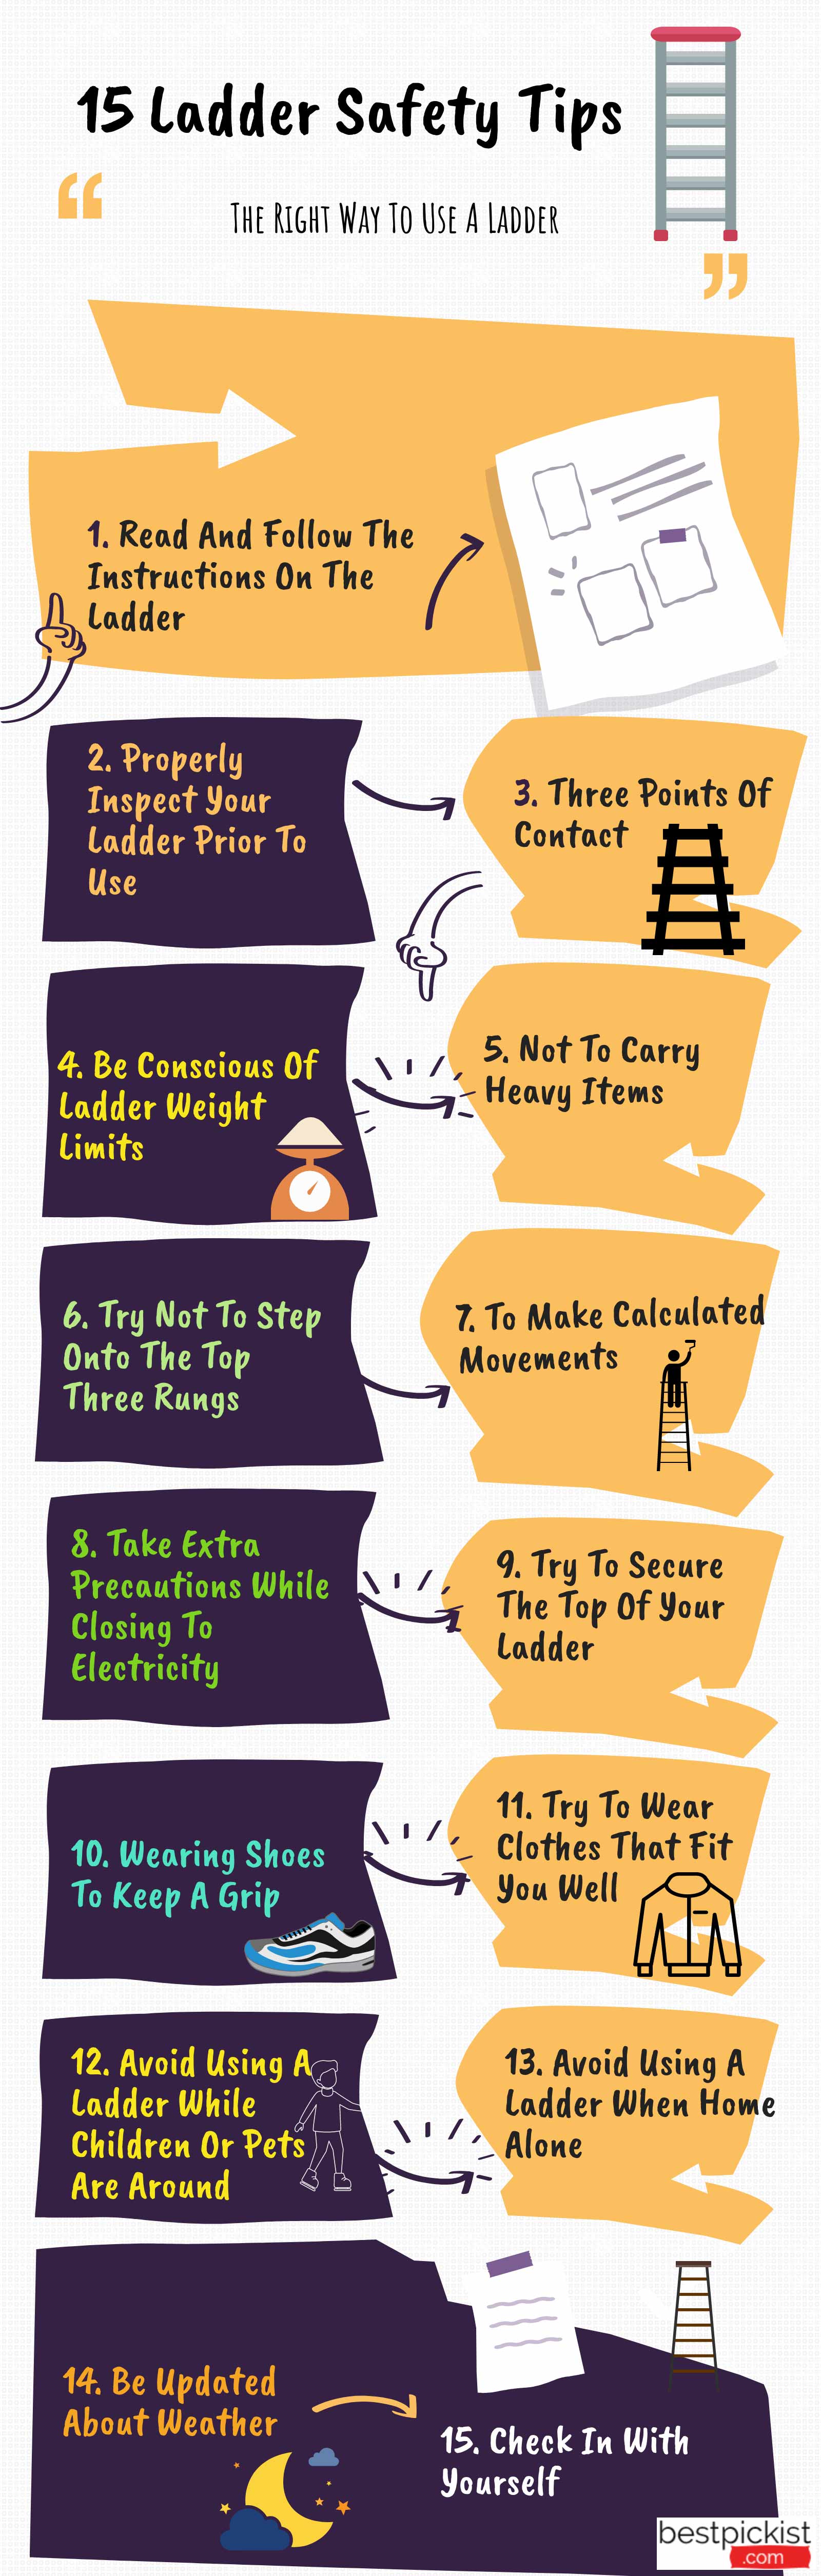 ladder safety- 15 tips